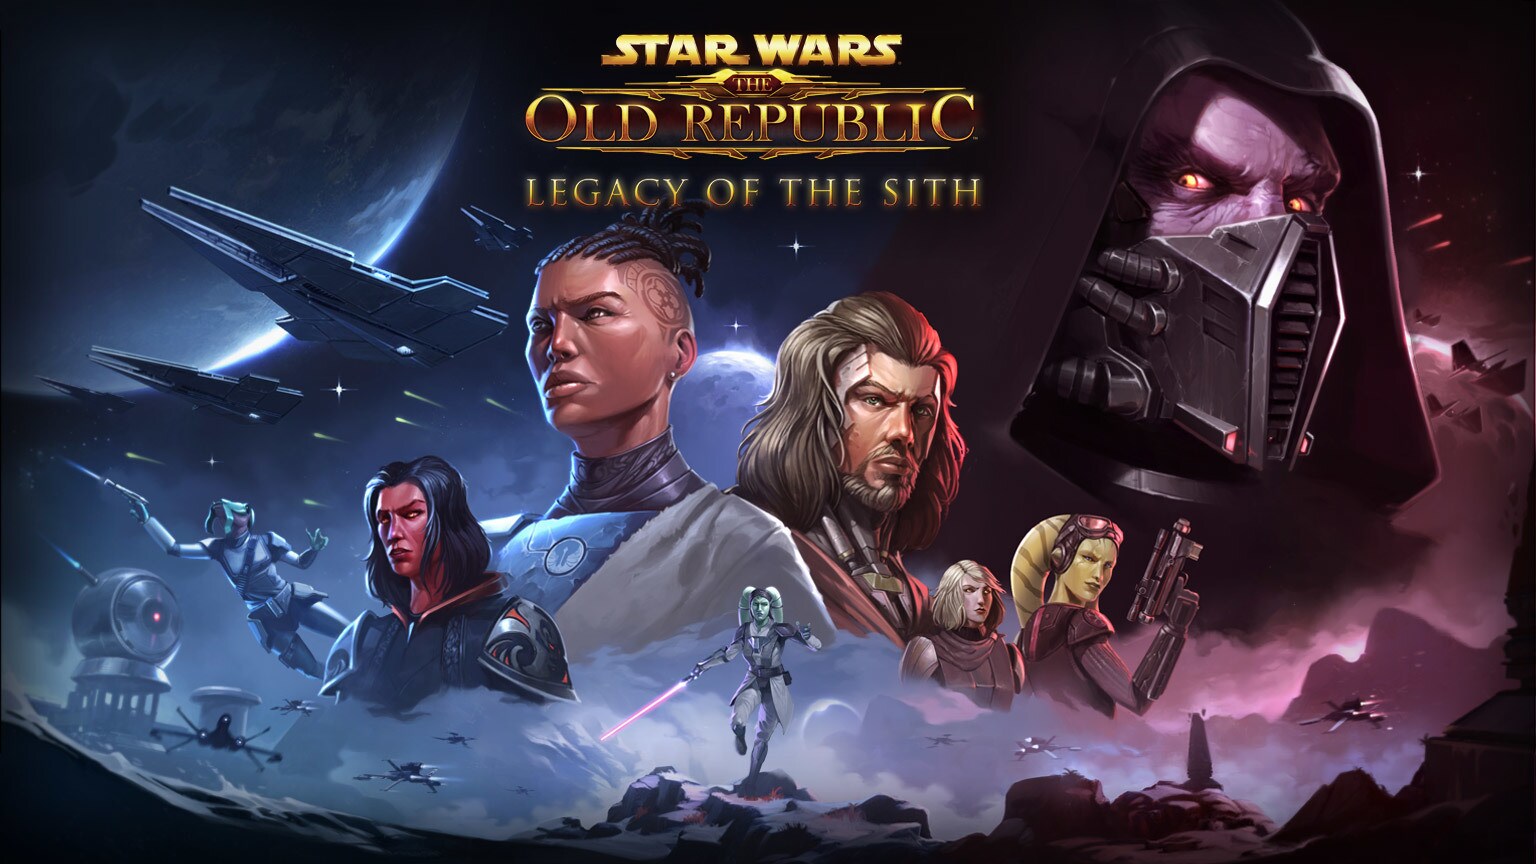 BioWare підтвердила звільнення частини команди розробки Star Wars: The Old Republic, оскільки гра переходить до іншого розробника